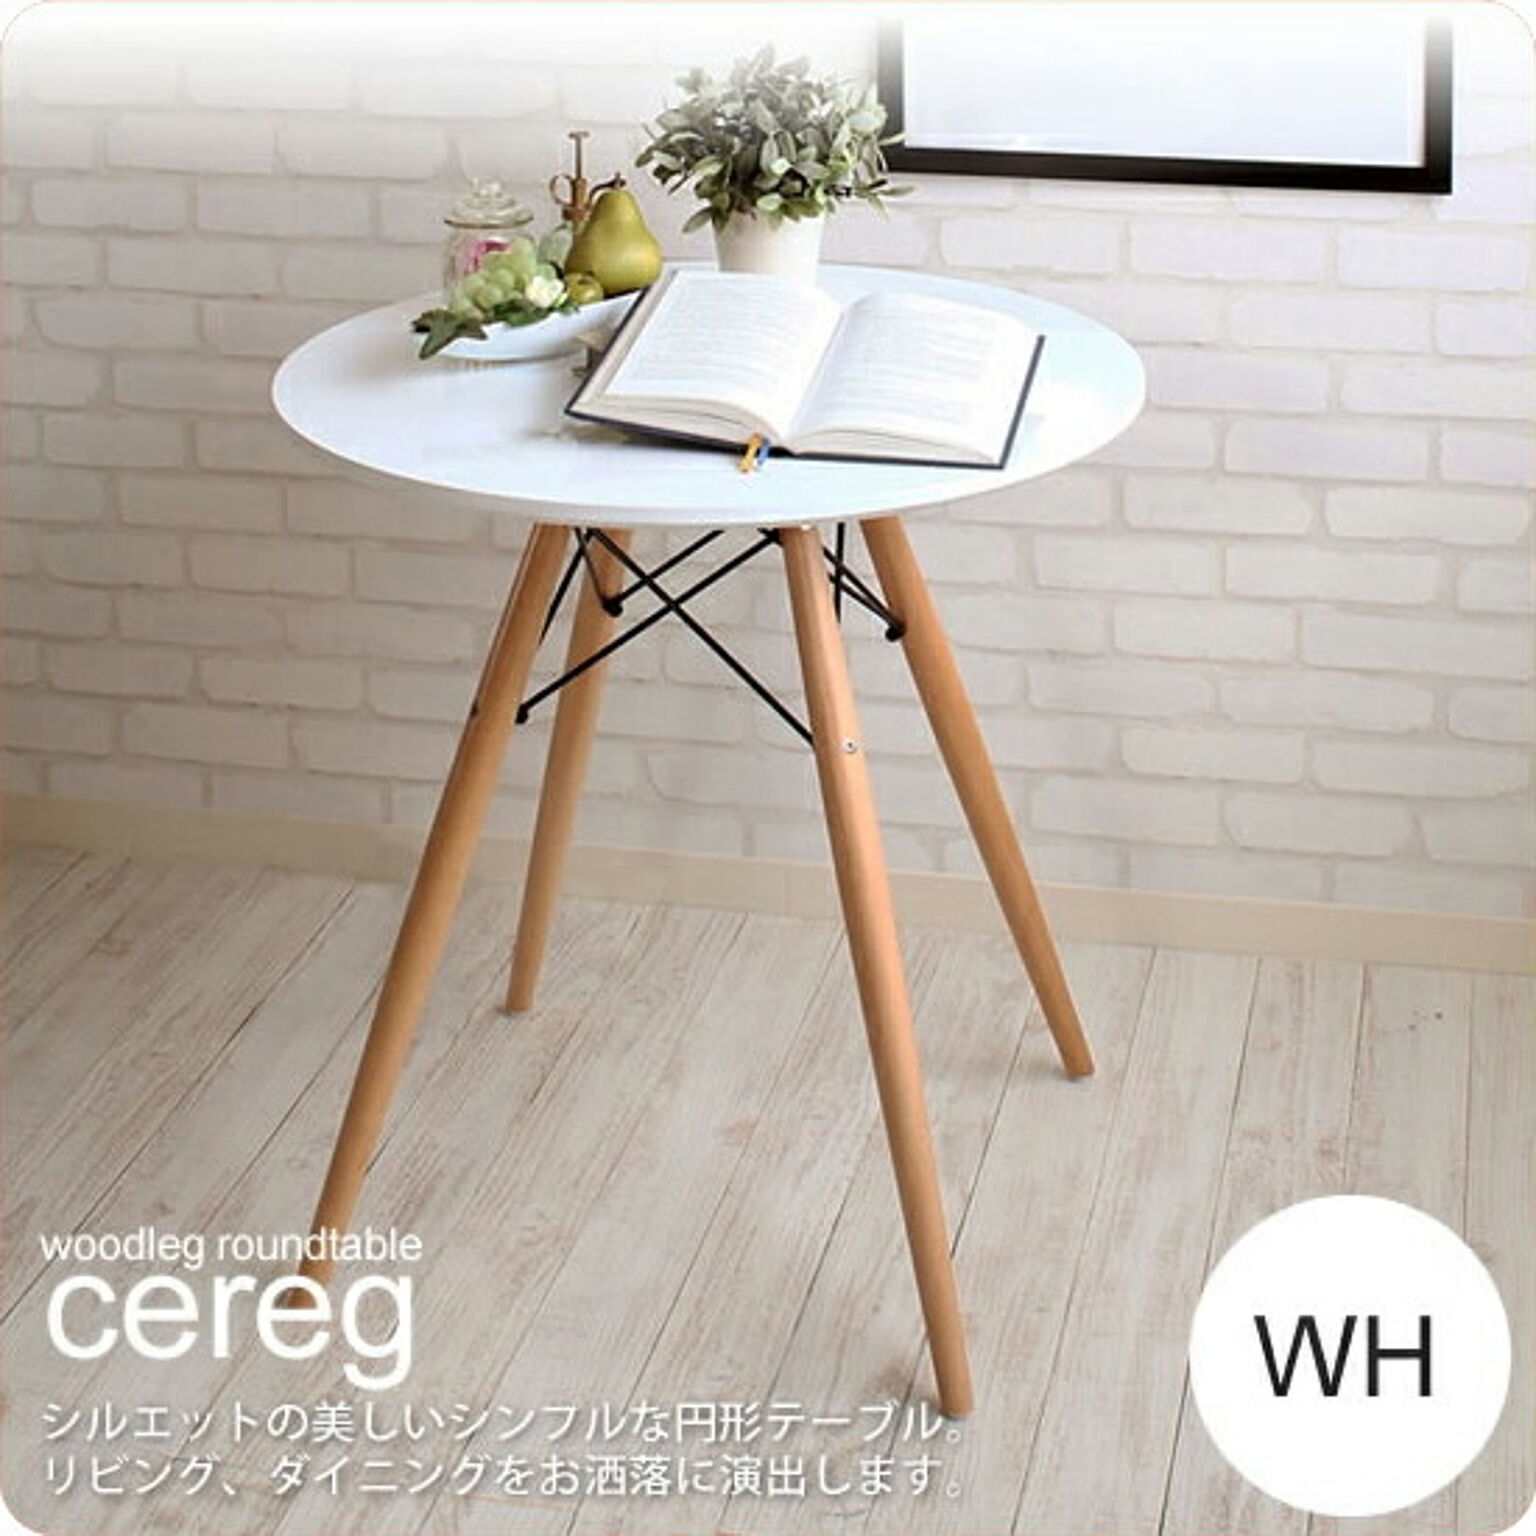 ラウンドテーブル カフェテーブル コーヒー 円形 丸型 ダイニング ： ホワイト【cereg】 ホワイト(white) (ナチュラル) 木脚 ミッドセンチュリー 